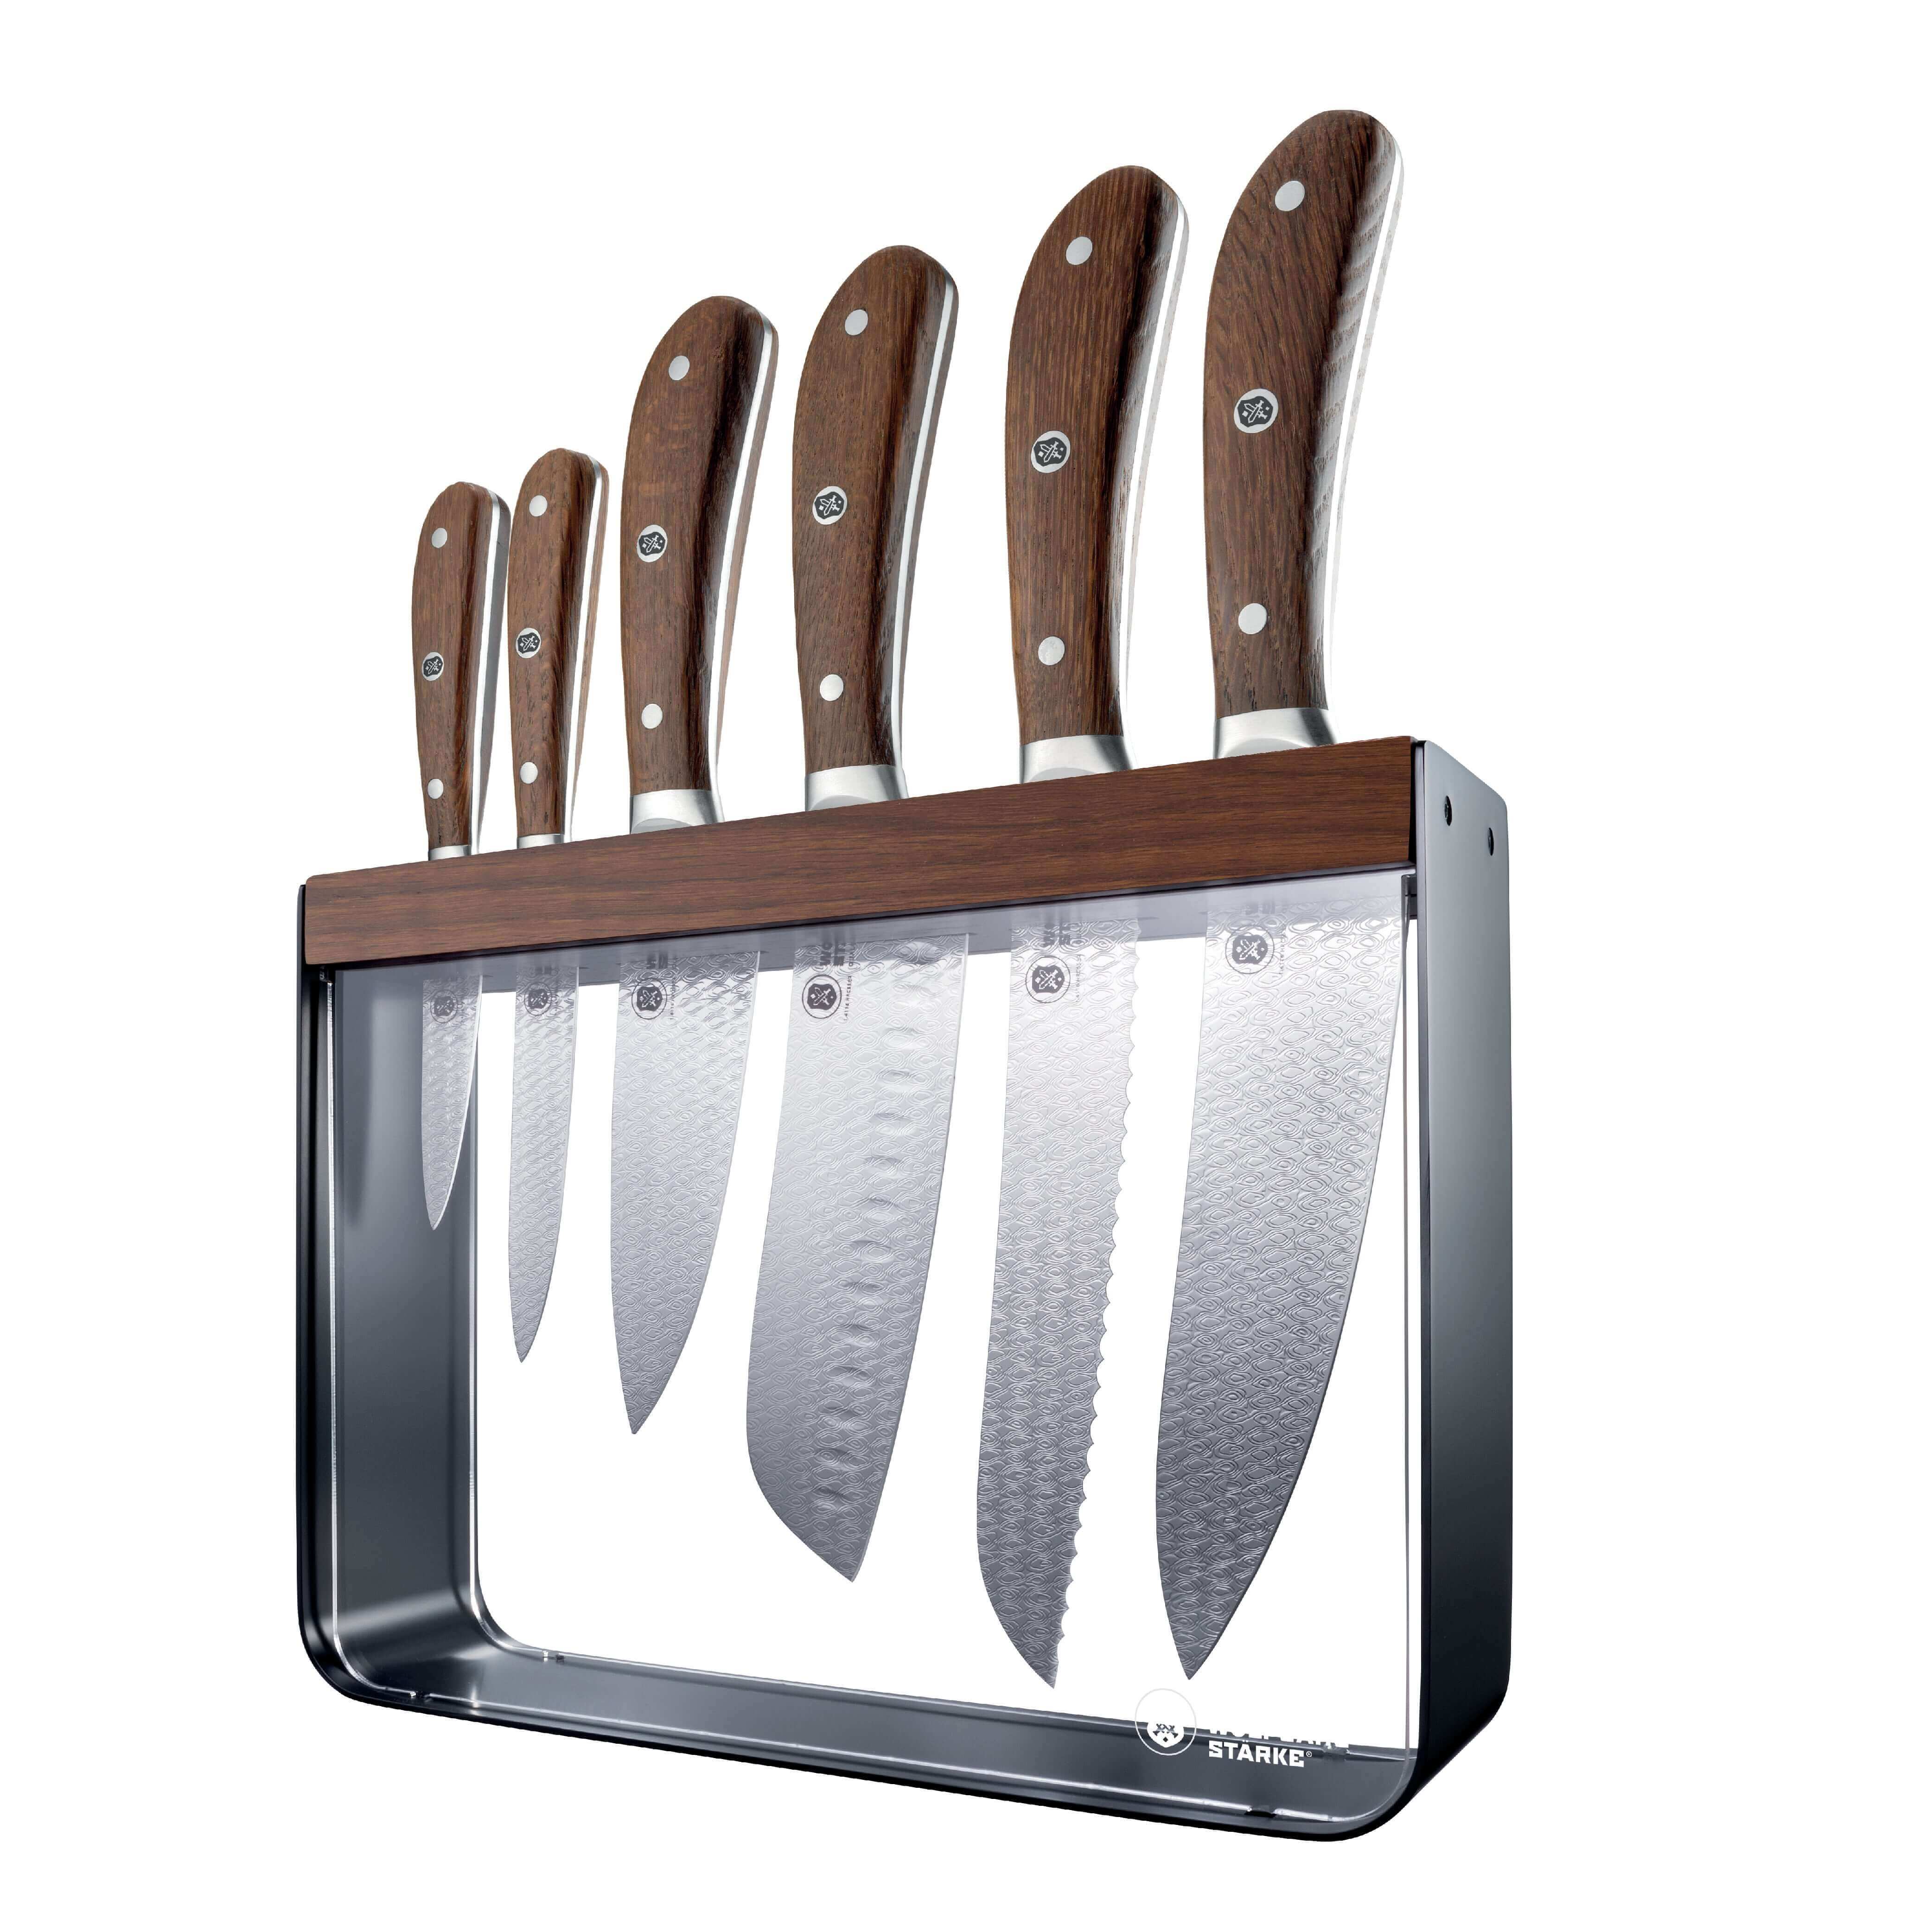 JMALL Kitchen Knife Sharpener Kitchen Utility Sharpening Tool 3 in 1 Knife  Sharpener Knife Sharpening Steel Price in India - Buy JMALL Kitchen Knife  Sharpener Kitchen Utility Sharpening Tool 3 in 1